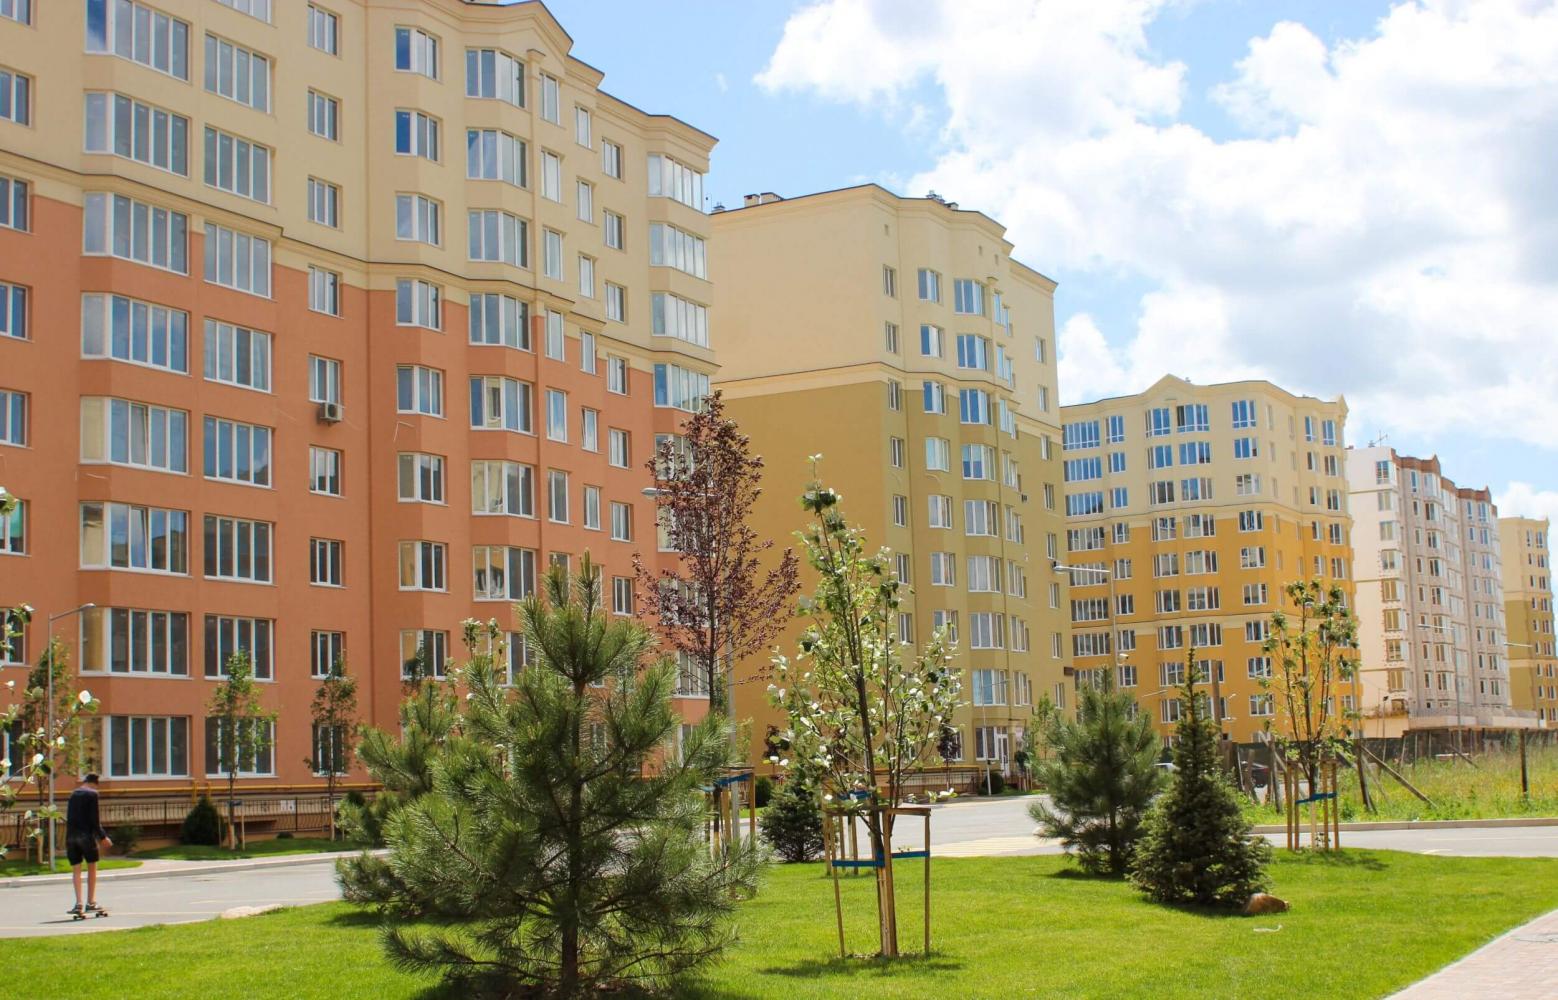 Купить квартиру от застройщика в Киеве: выгодные условия при самом высоком уровне жилья